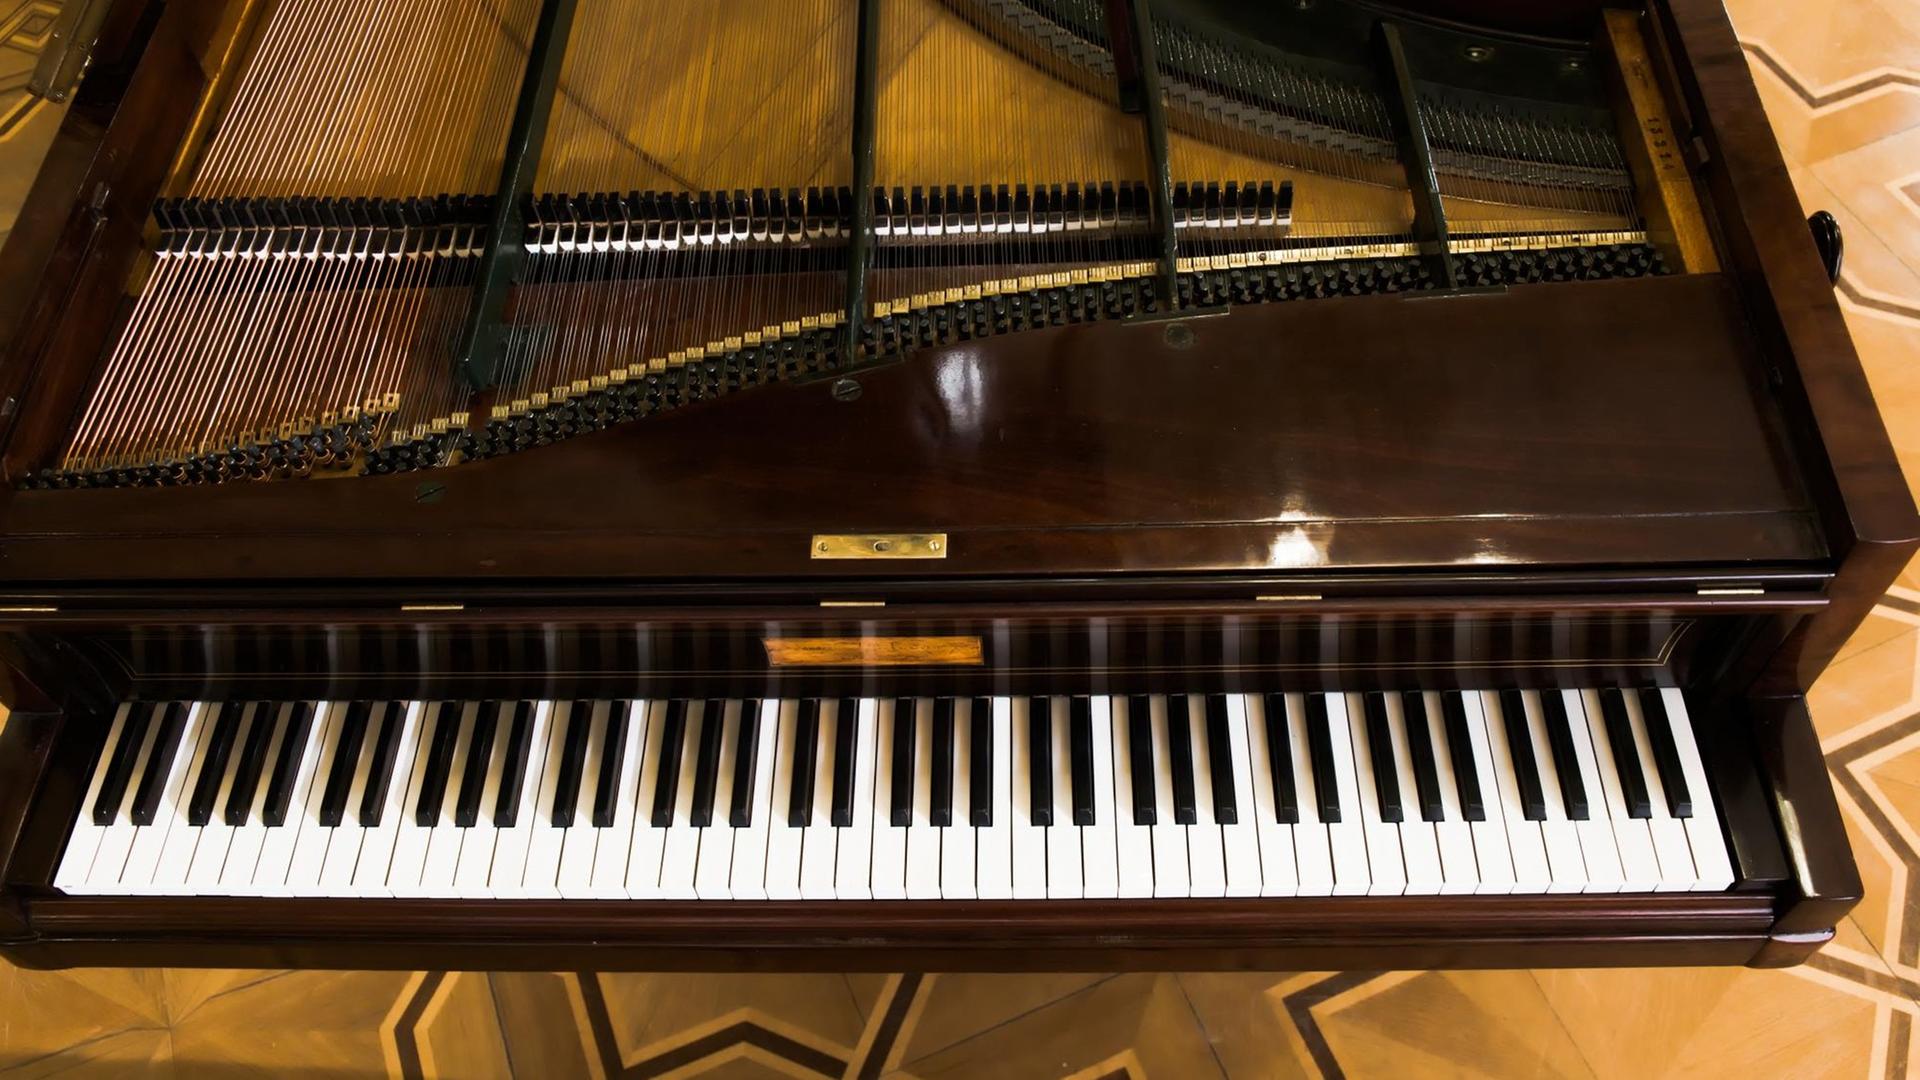 Ein Pleyel-Flügel wie ihn Chopin gespielt hat.